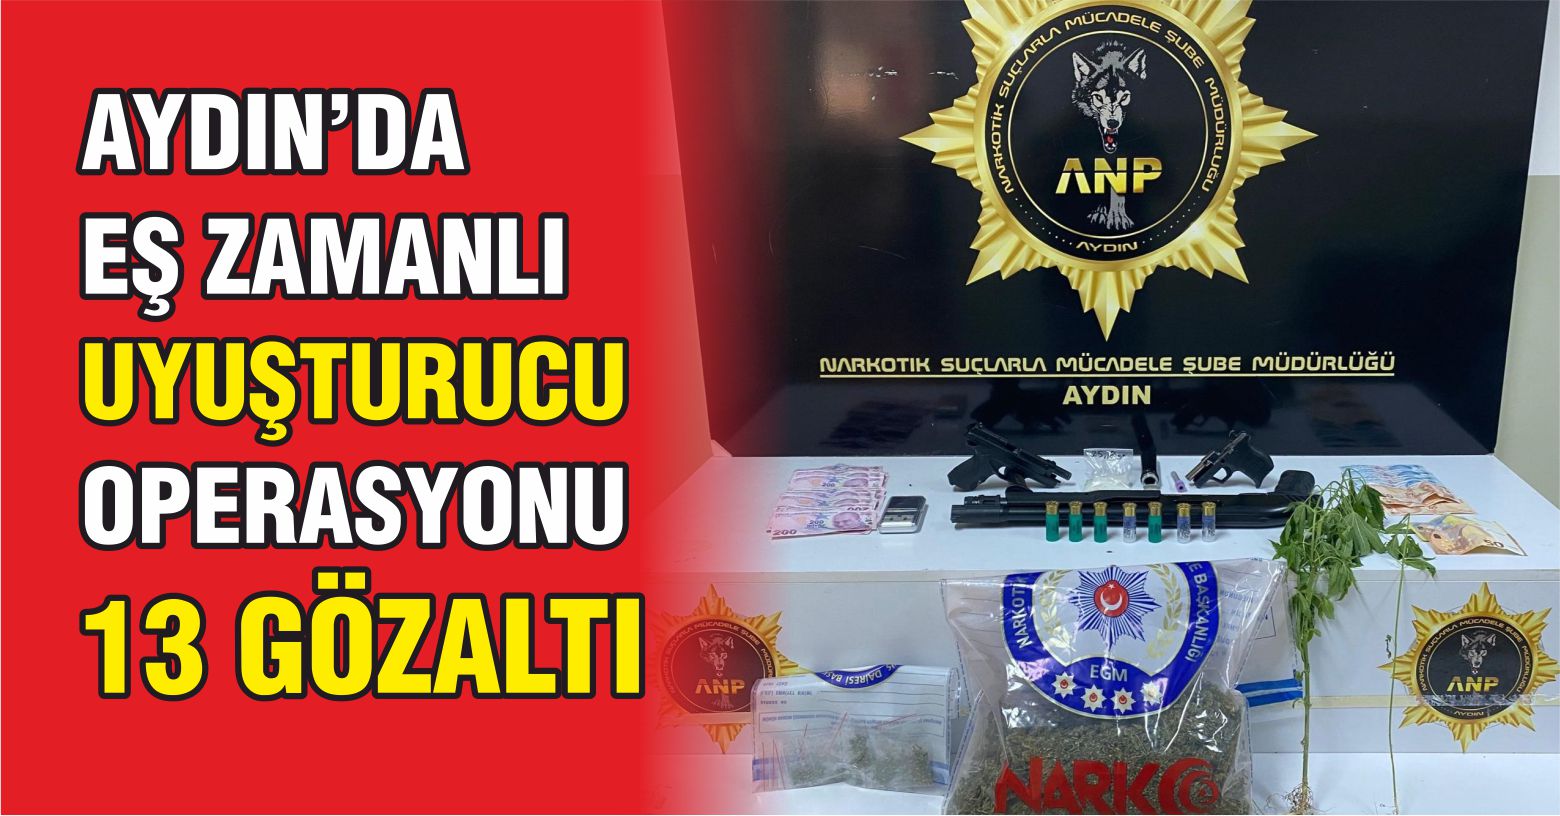 Aydın’da eş zamanlı uyuşturucu operasyonu: 13 gözaltı